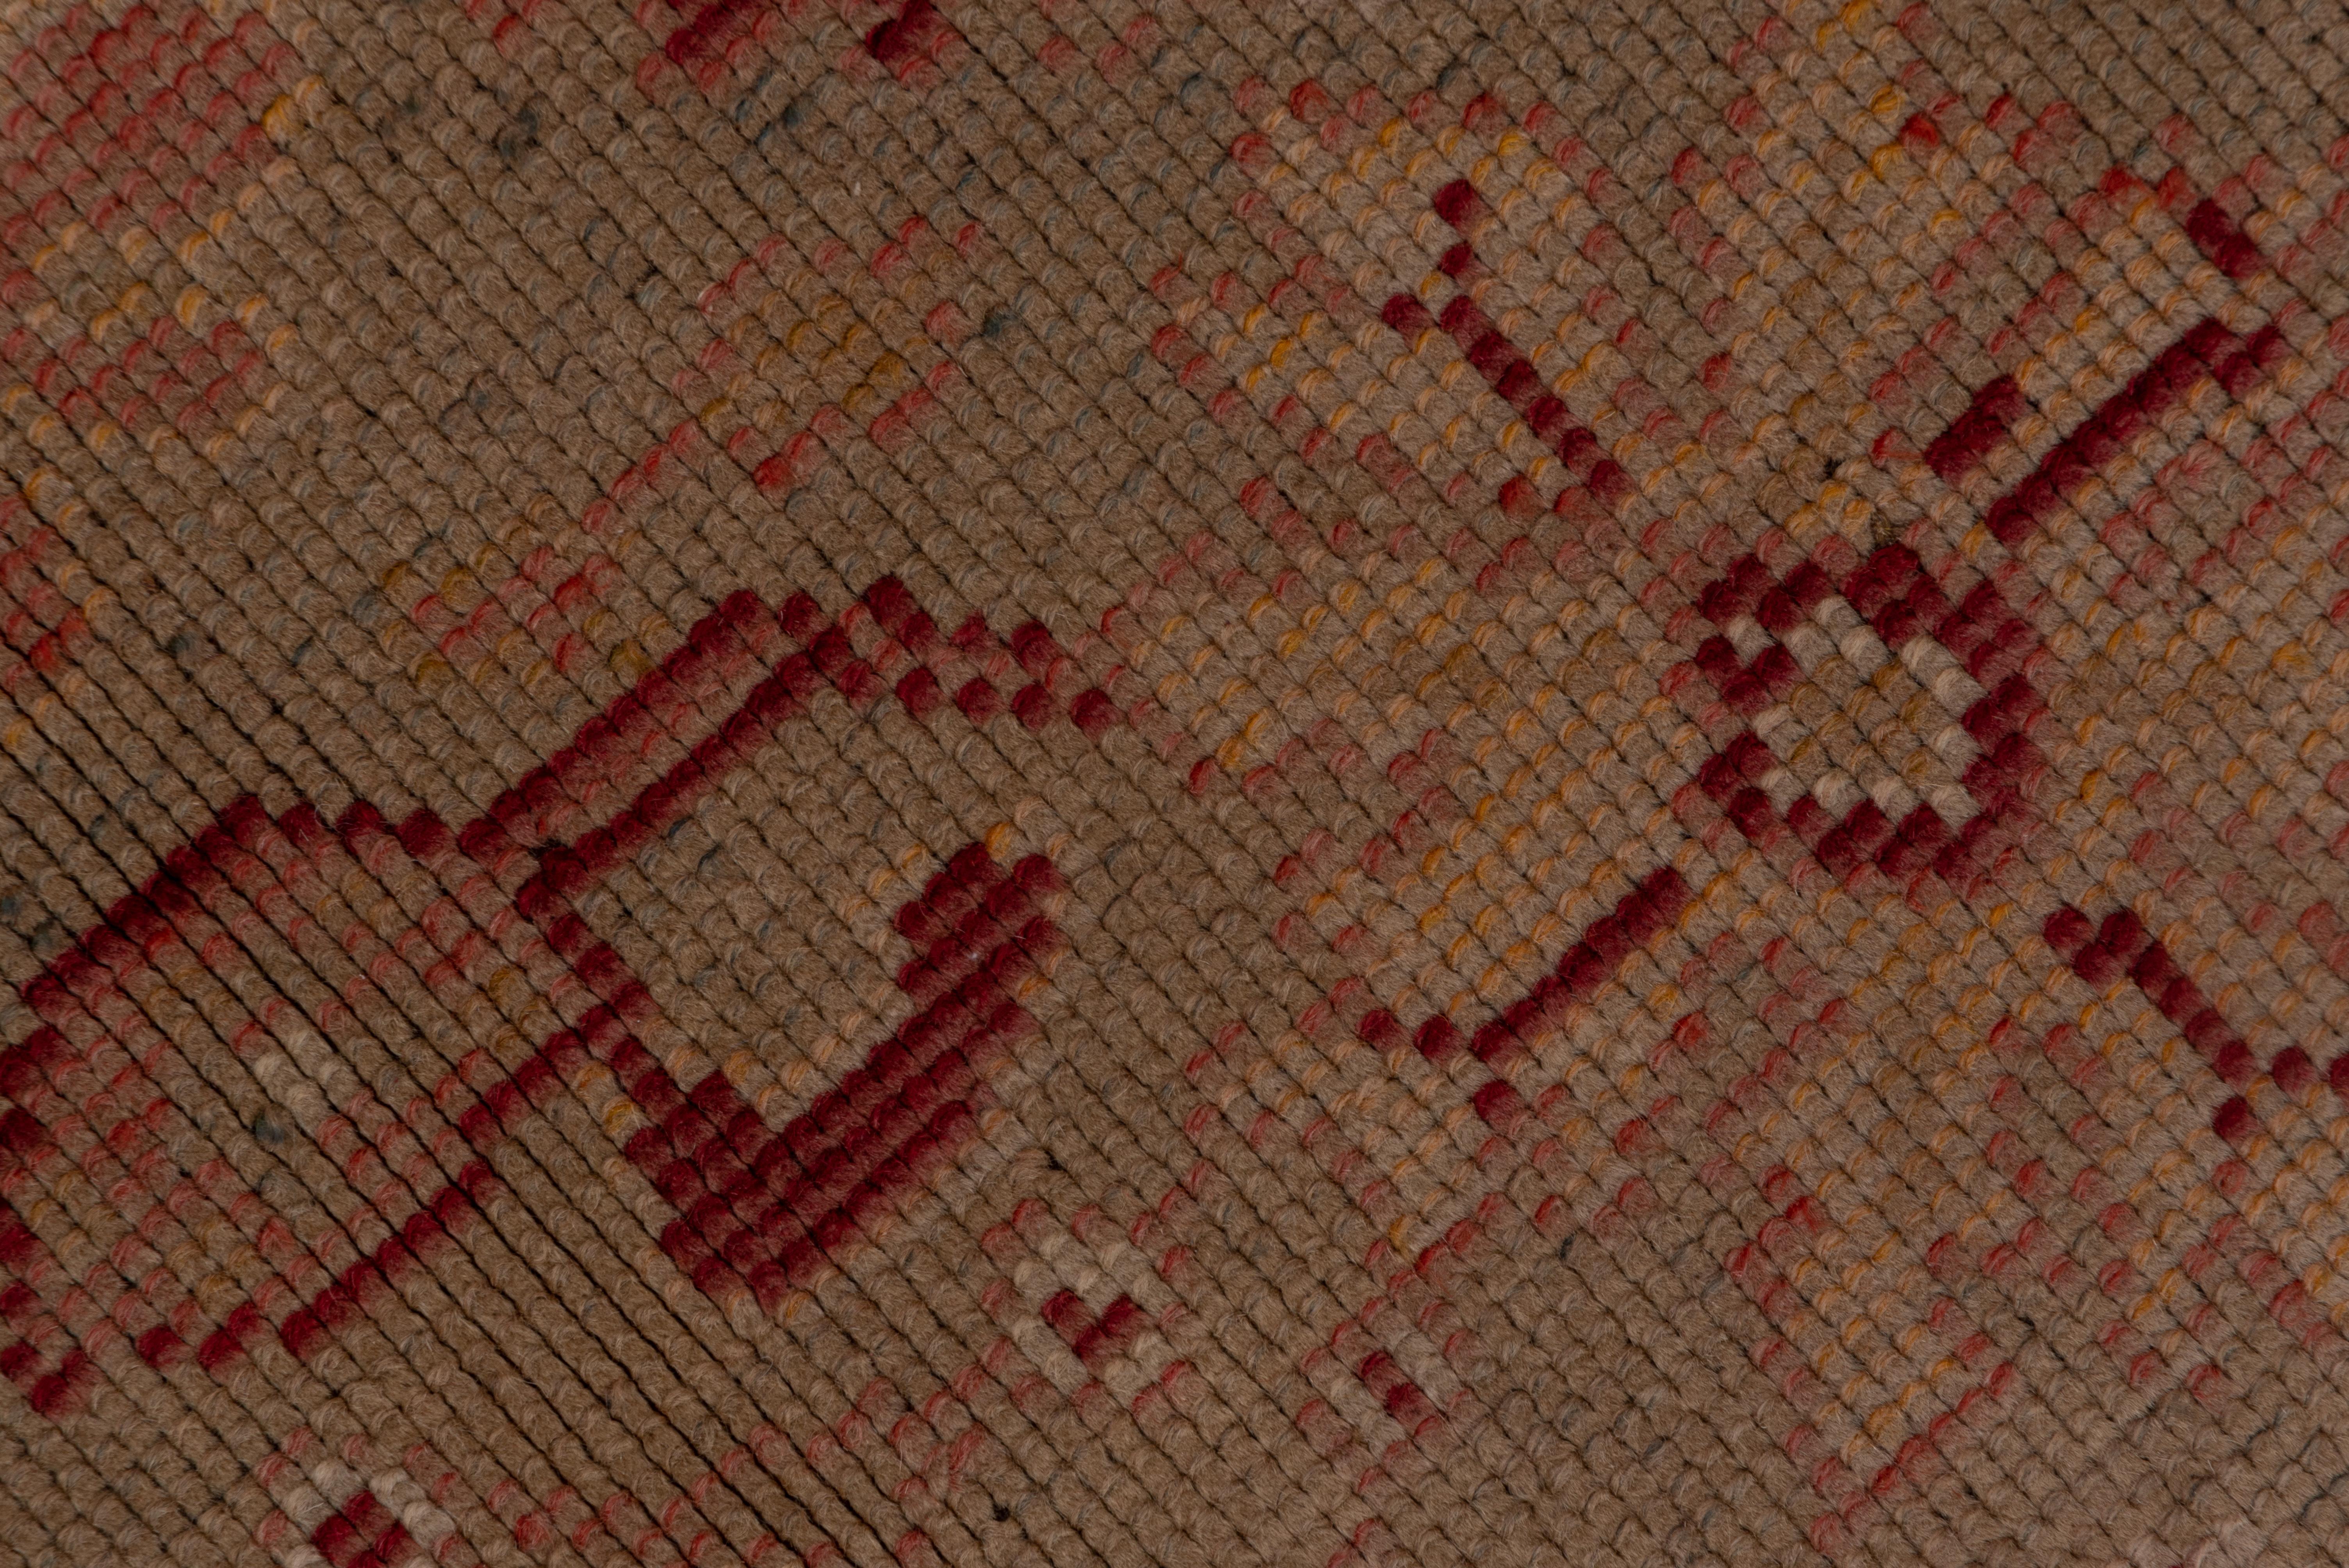 Rustic Antique Dutch Gallery Carpet, Seafoam Field, circa 1910s